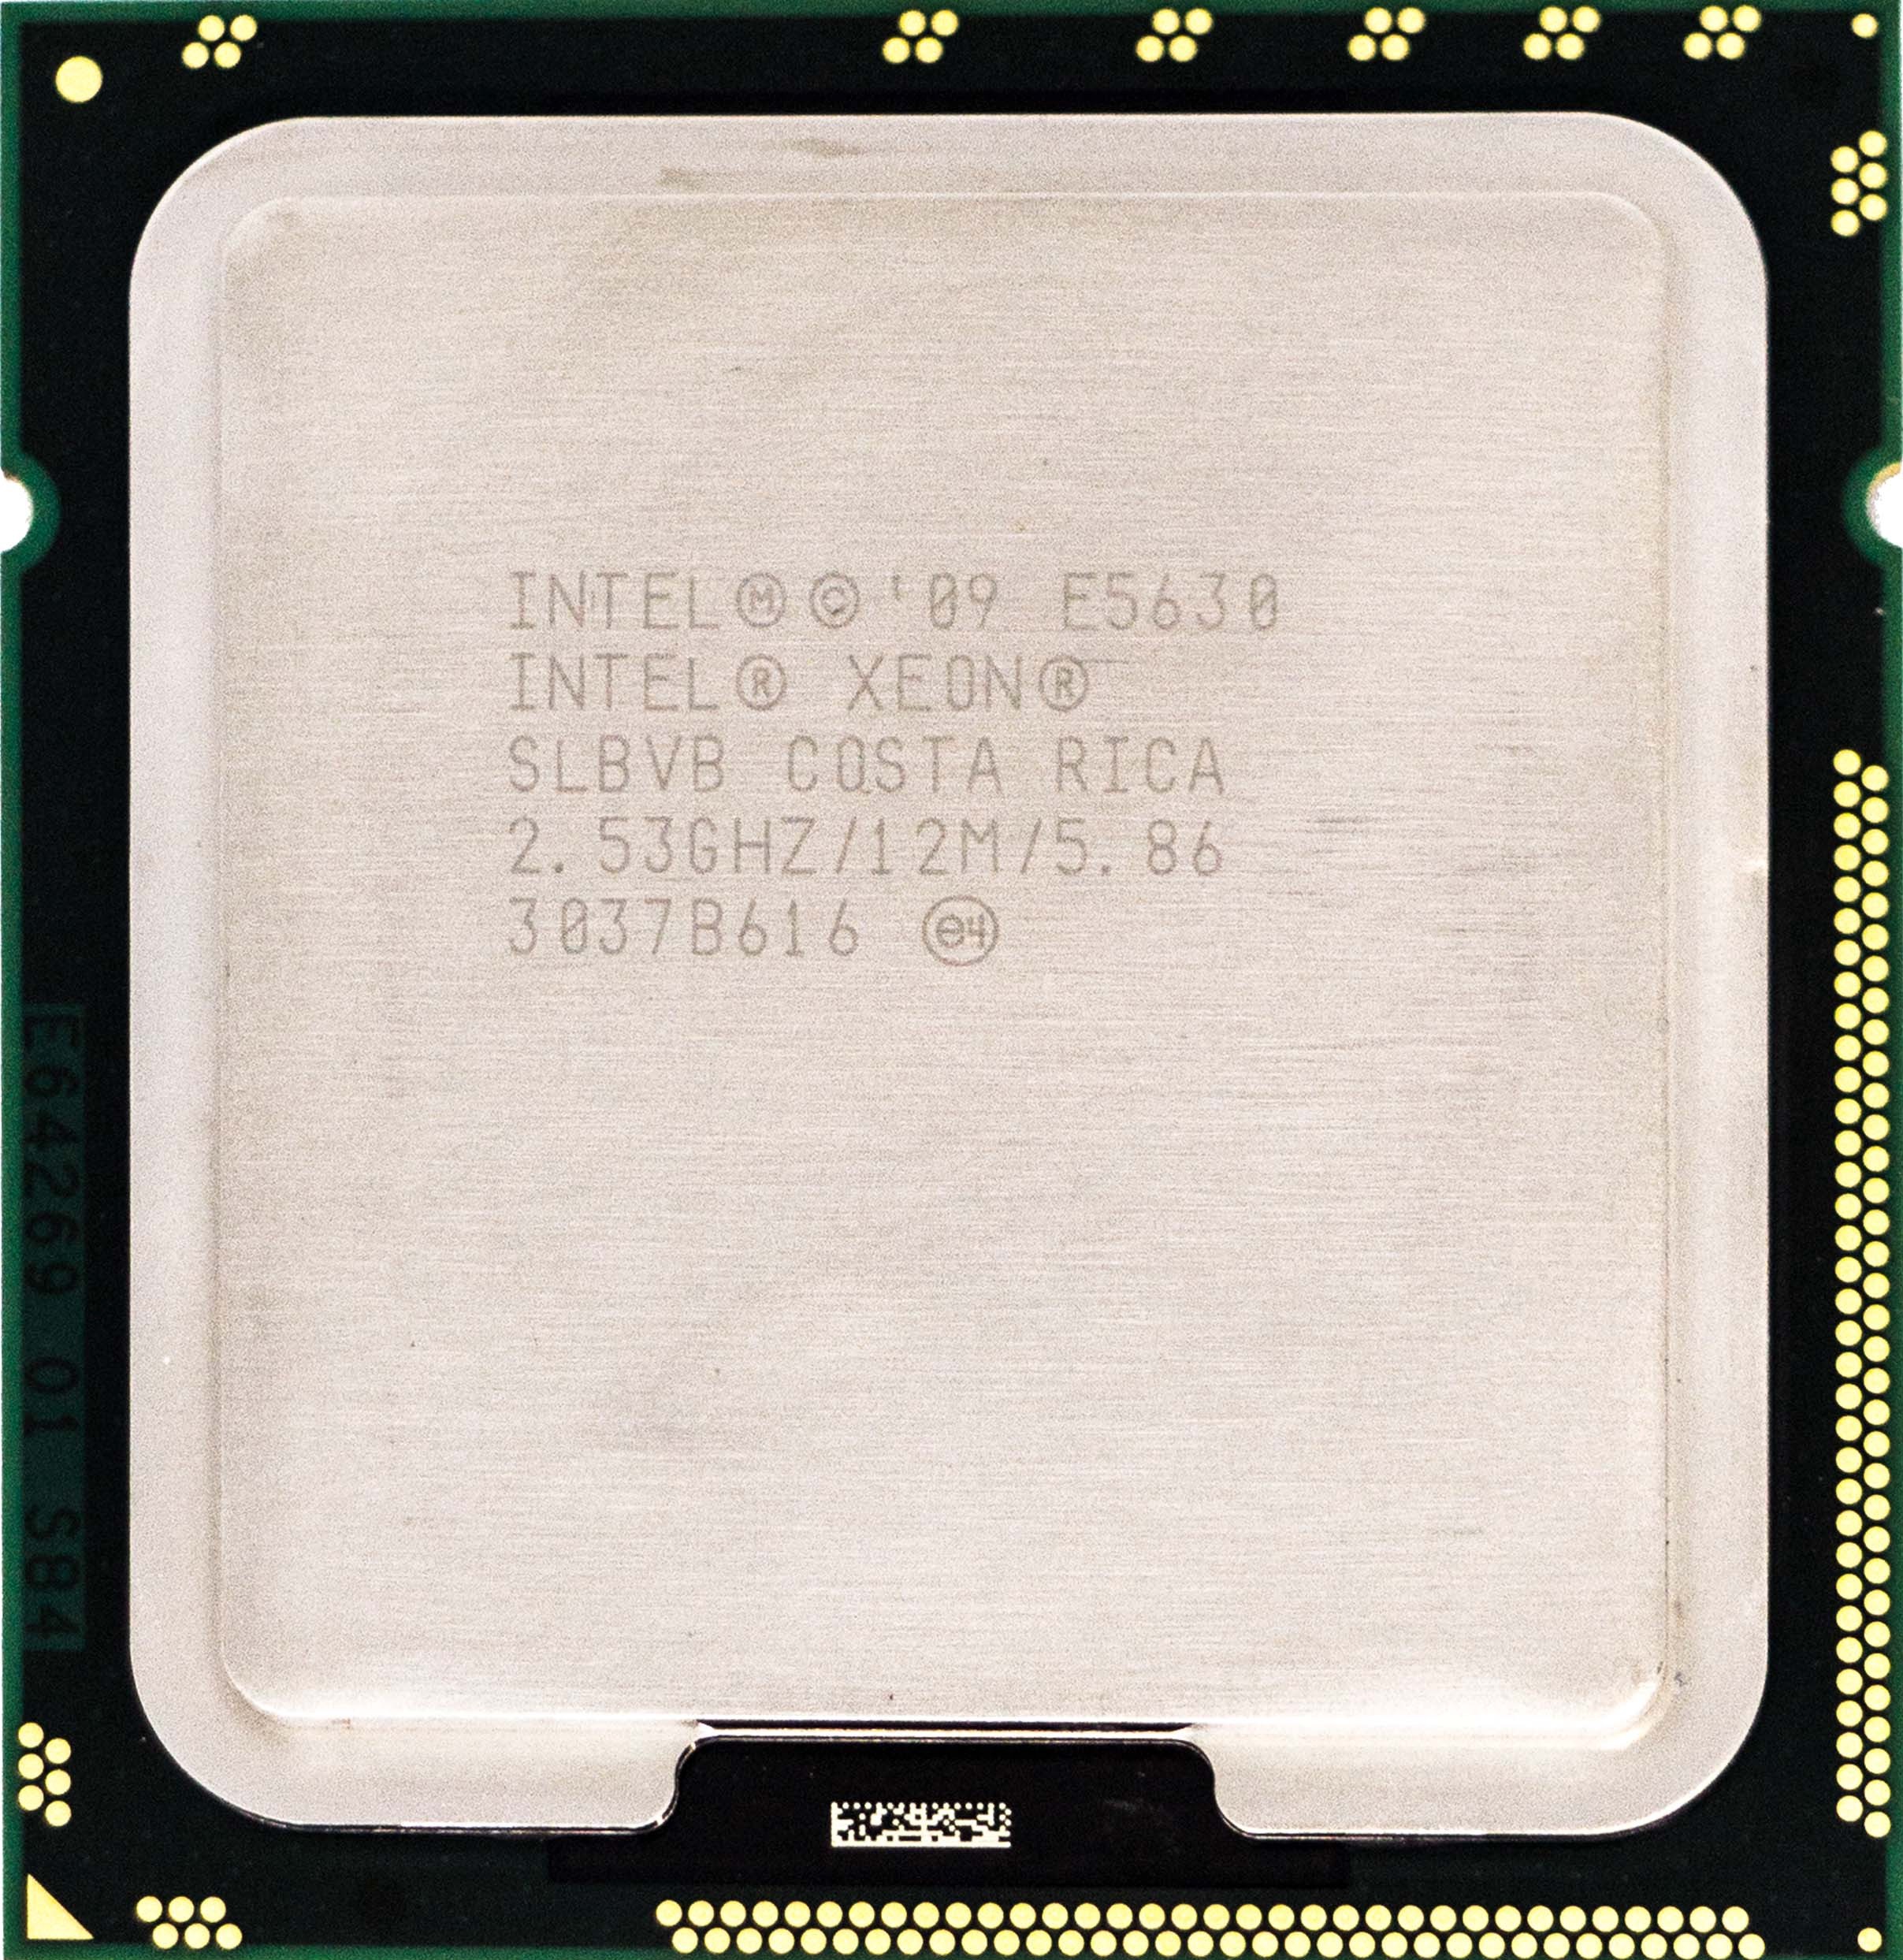 SLBVB Intel Xeon E5630 (SLBVB) 2.53Ghz Quad (4) Core LGA1366 80W CPU